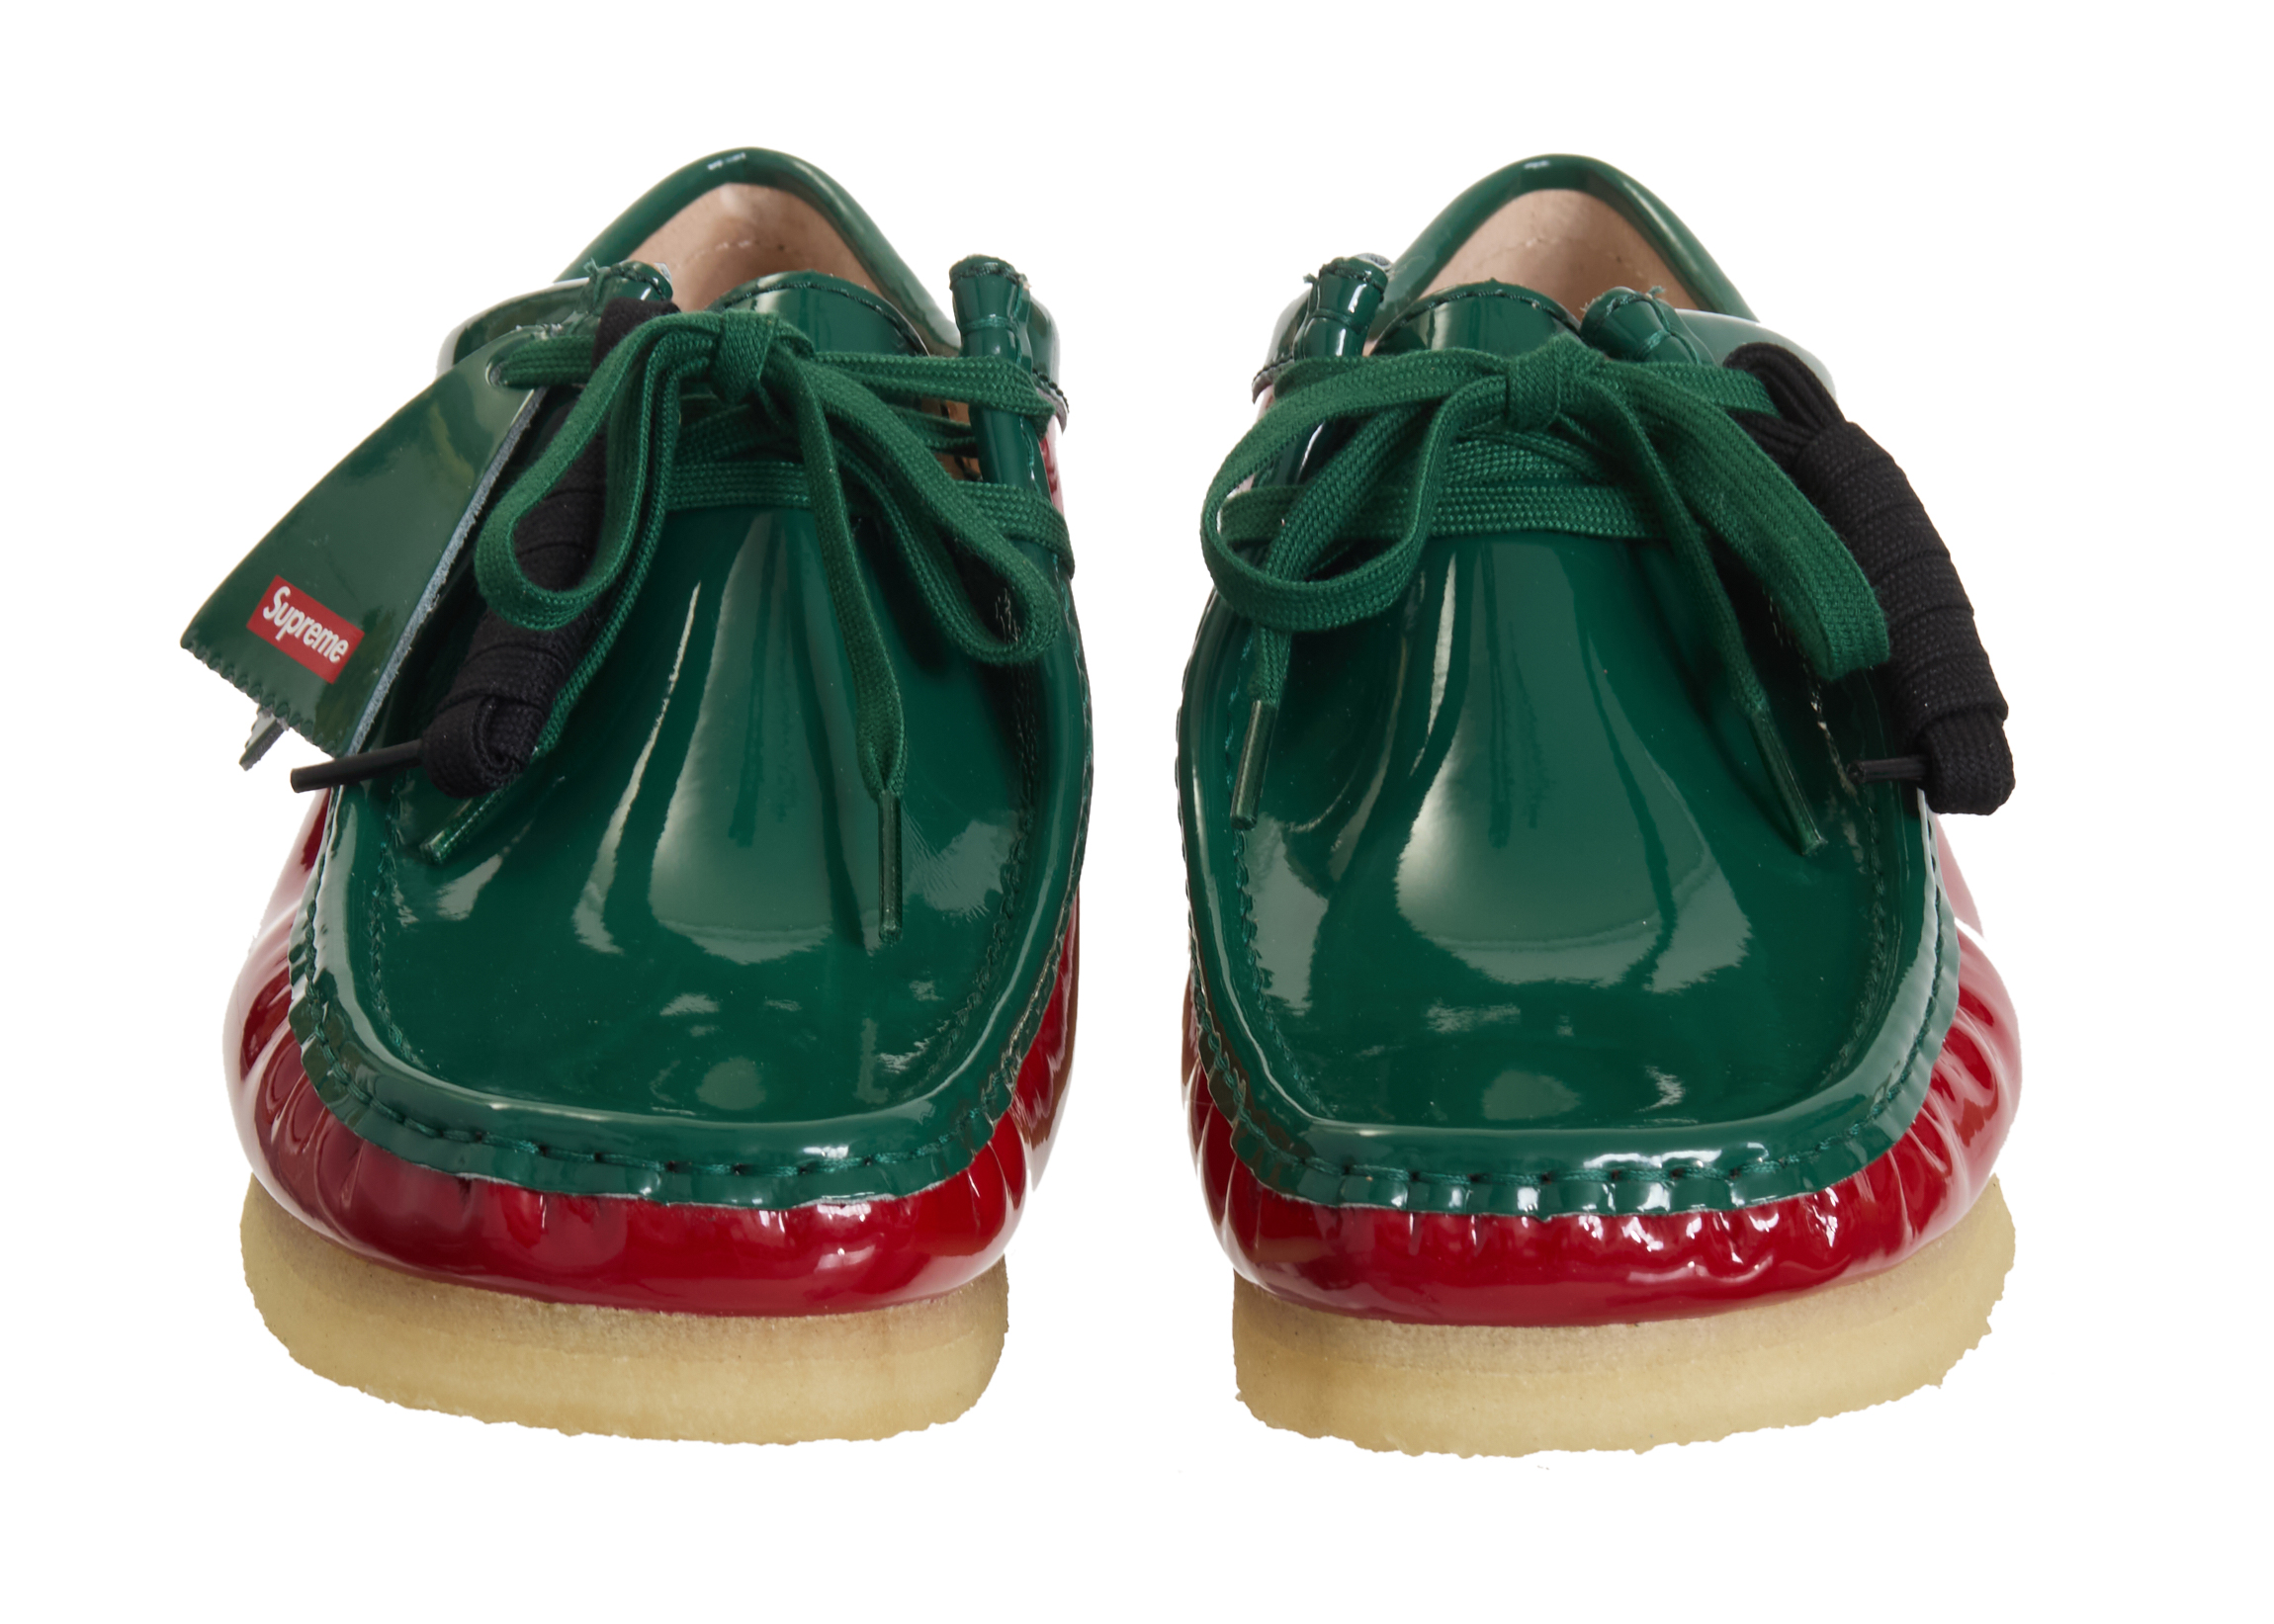 Clarks Originals Wallabee Patent Leather Boot Supreme Multicolor ...